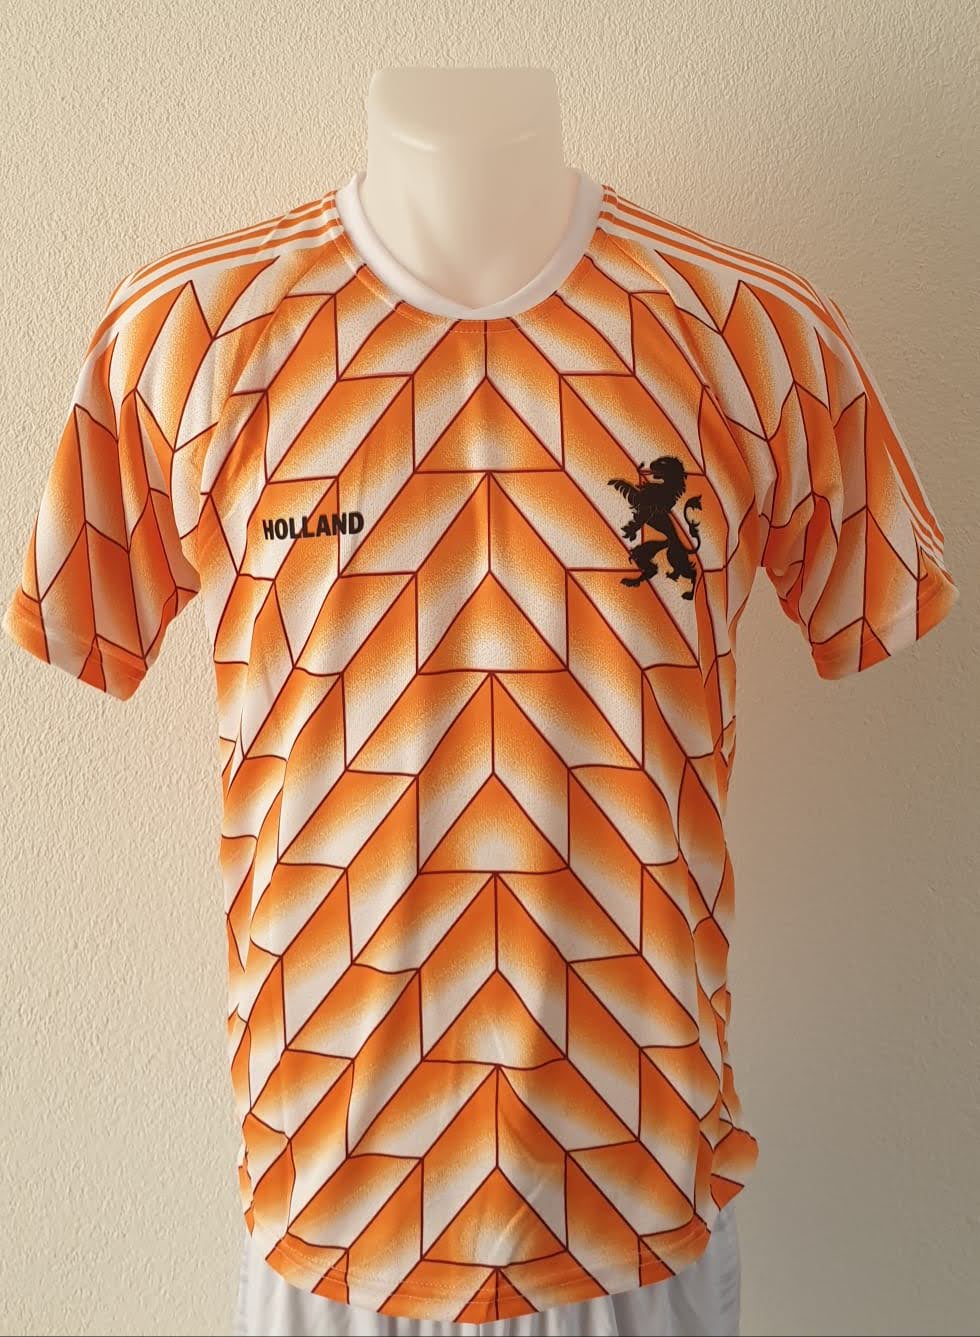 Nederlands Voetbalshirt 88' -